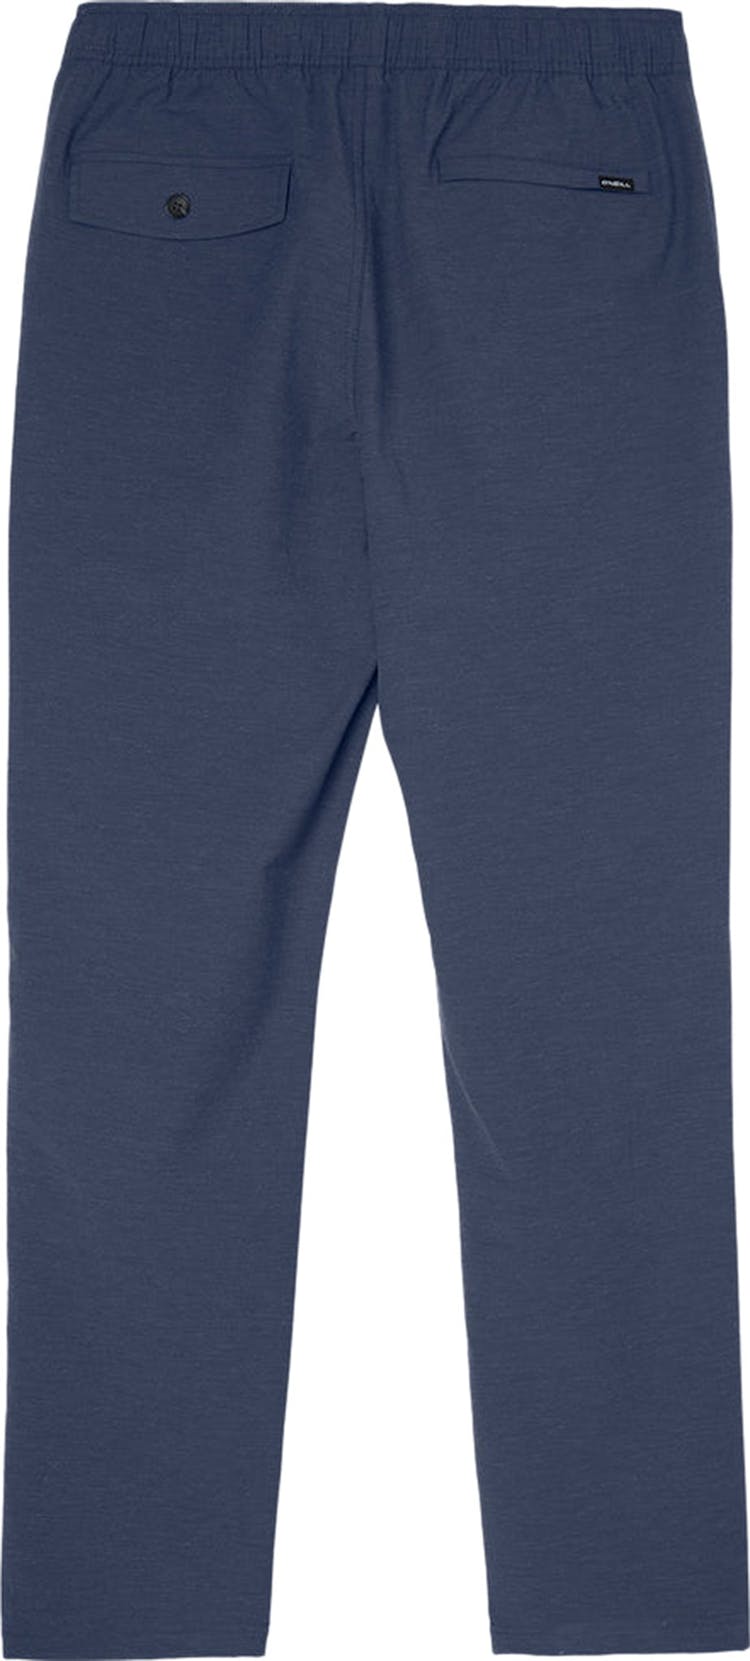 Numéro de l'image de la galerie de produits 2 pour le produit Pantalon hybride Venture E-Waist - Homme